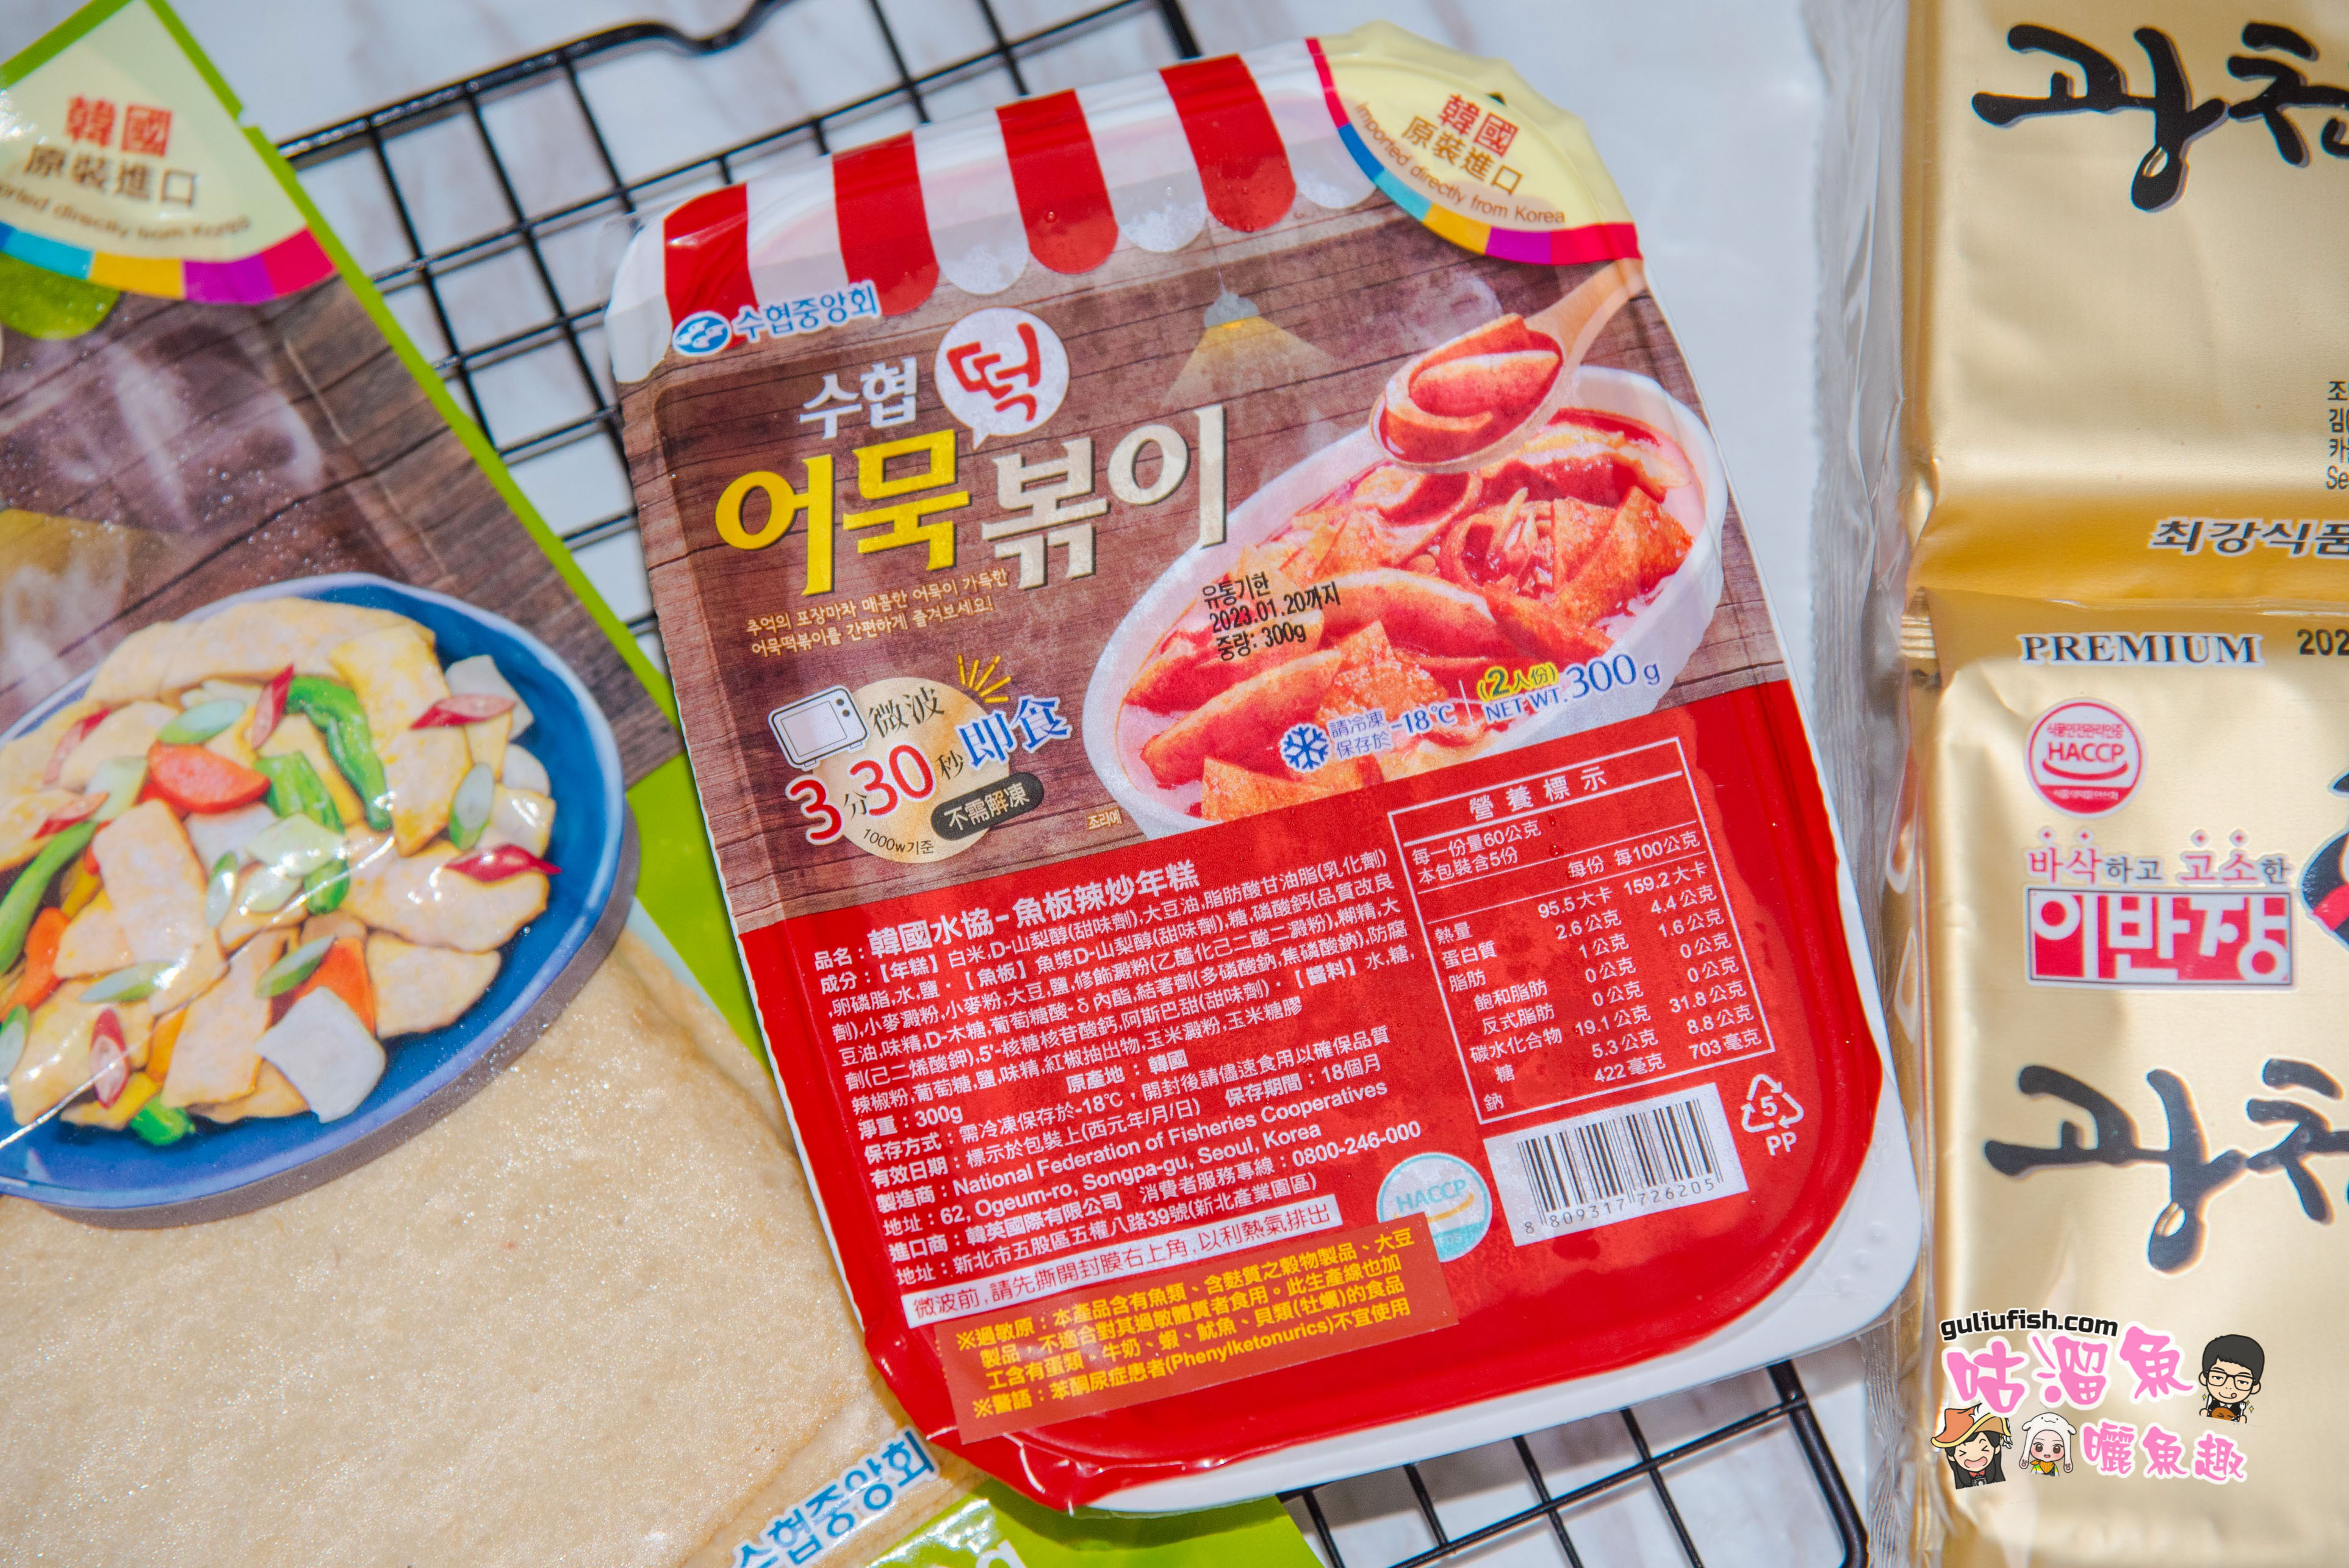 韓國料理食材推薦》韓國水協/韓英：在家也能簡單輕鬆做料理，多種韓國食材的創意料理食譜